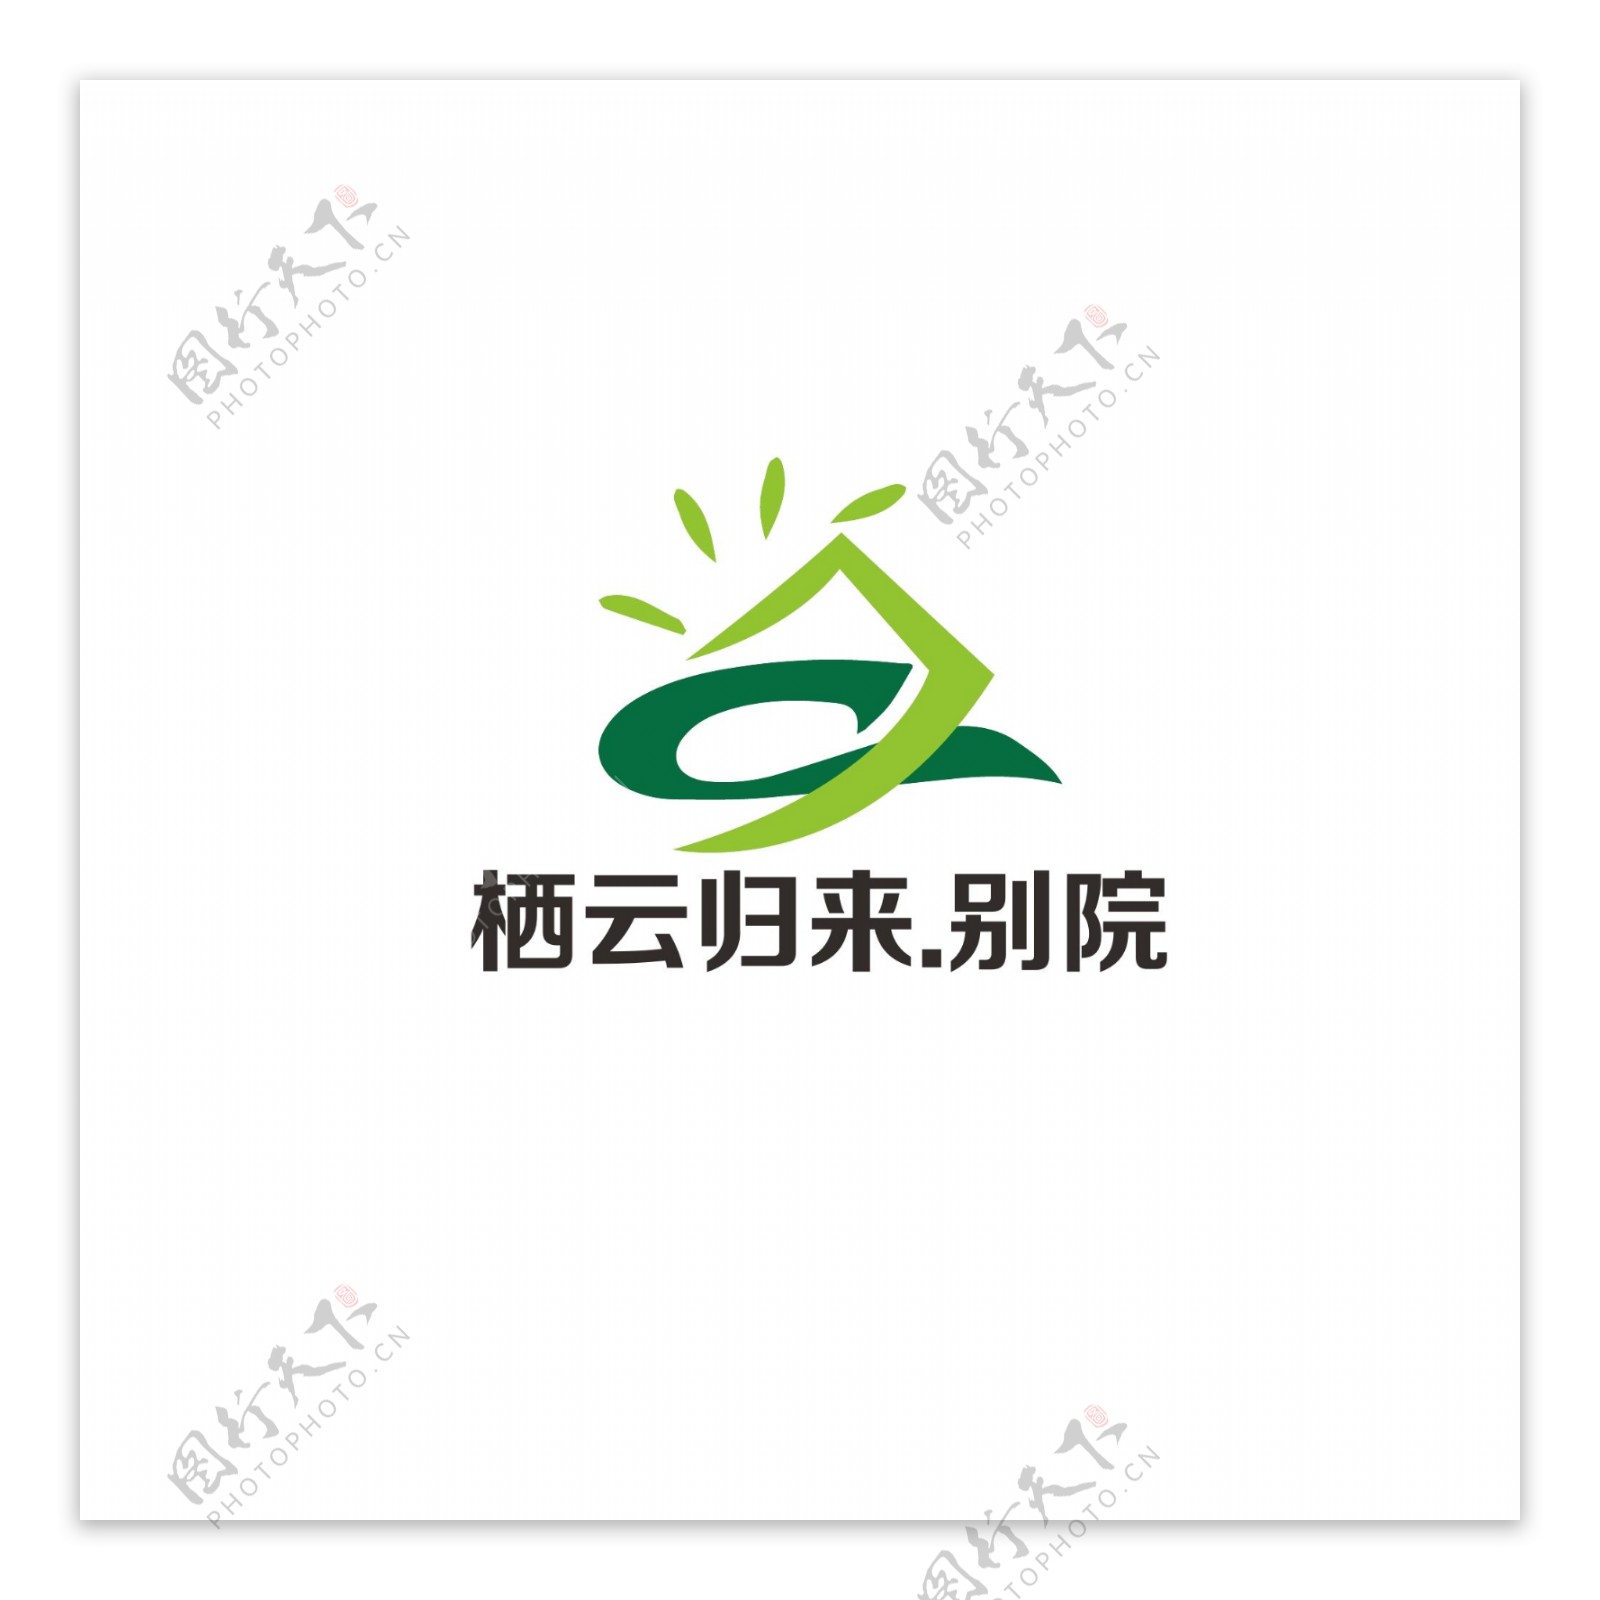 农牧行业logo设计